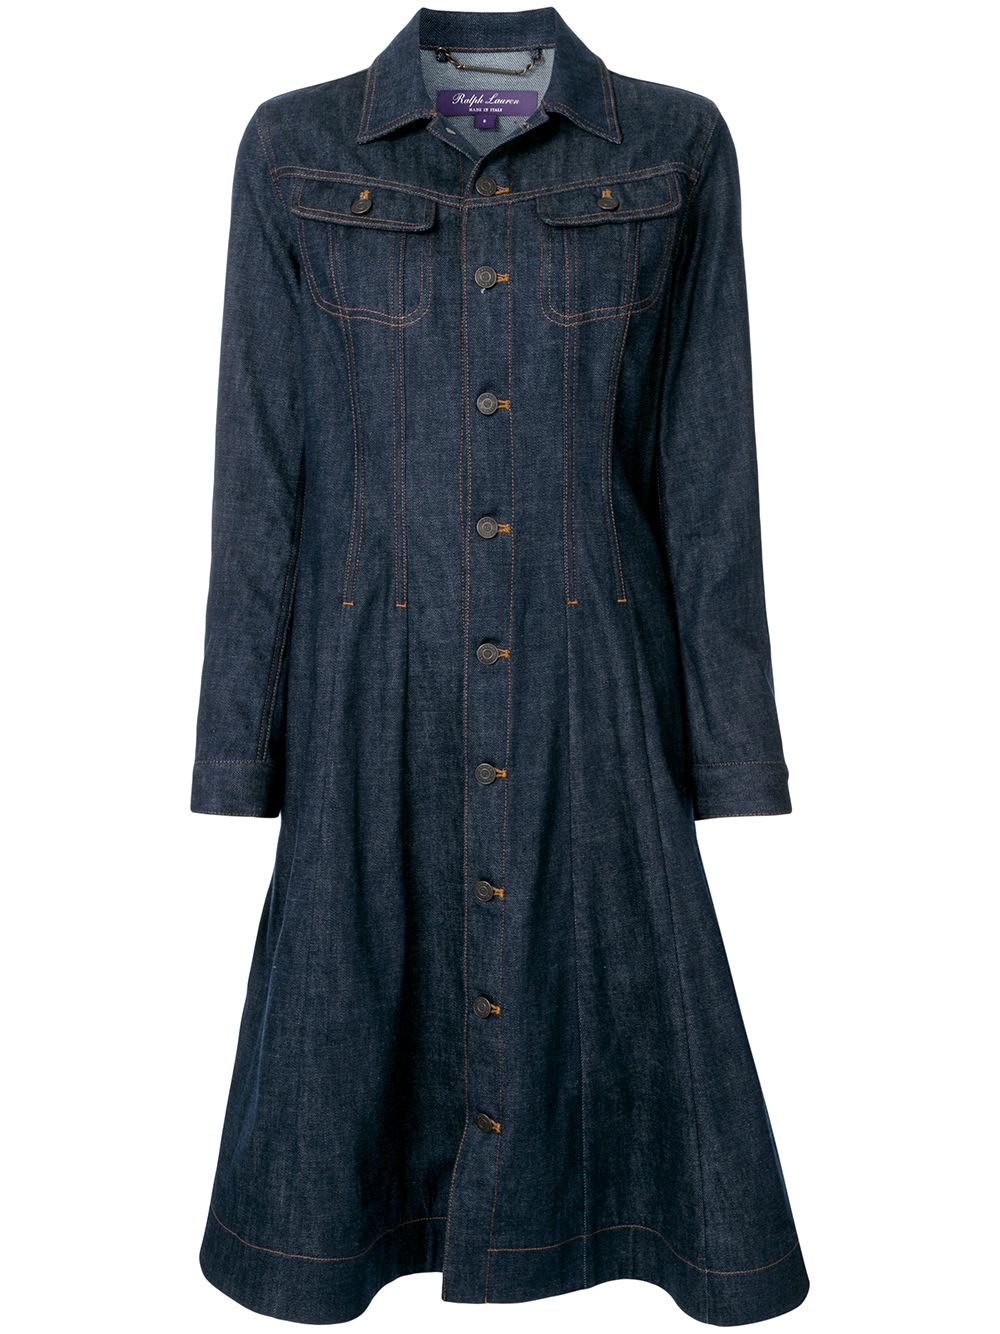 фото Ralph lauren collection джинсовое платье со вставками